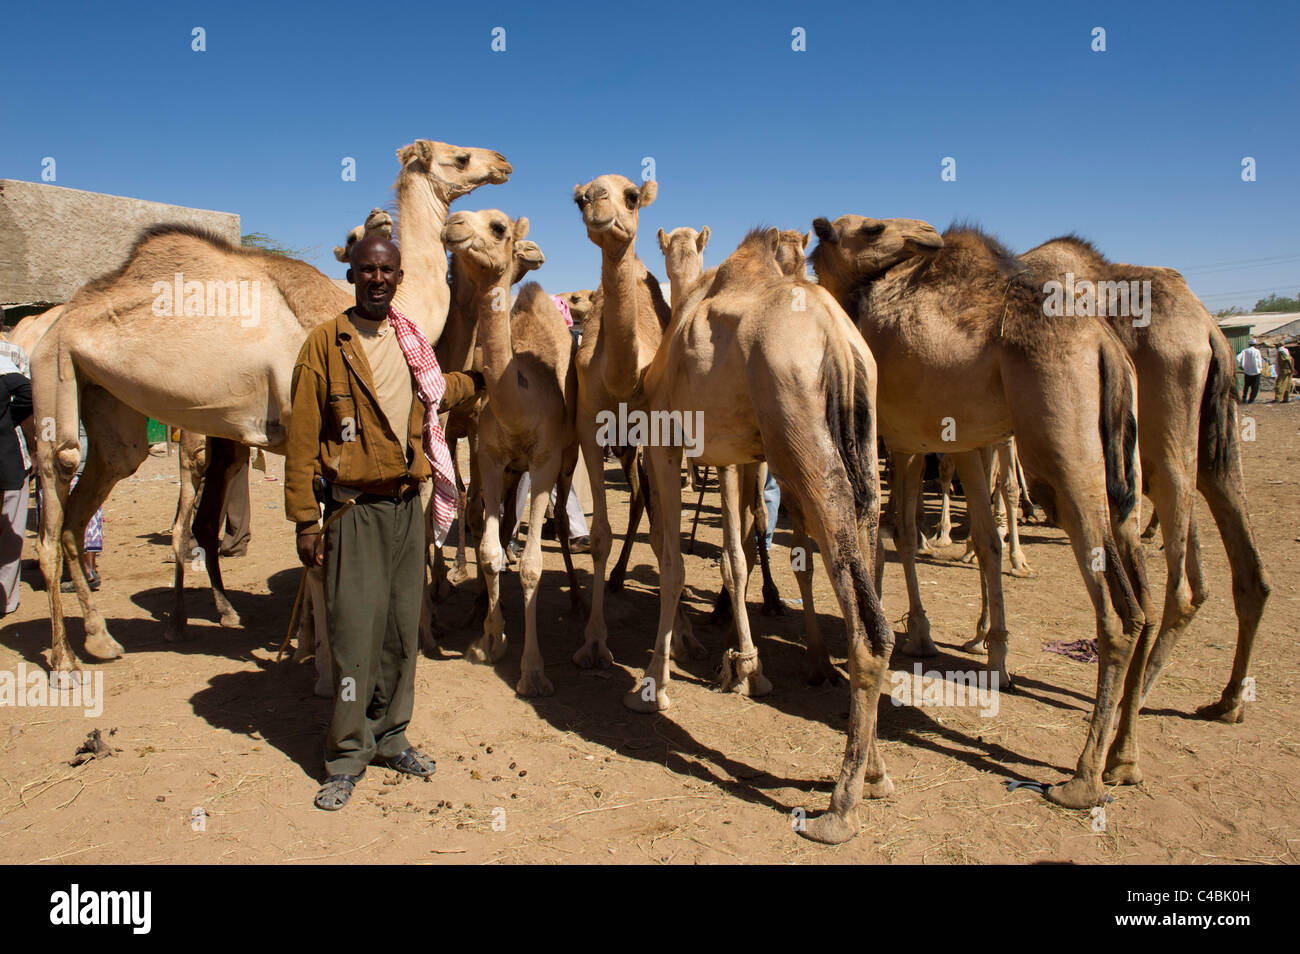 Mercado de camellos y cabras, Hargeisa, Somalilandia, Somalia Foto de stock